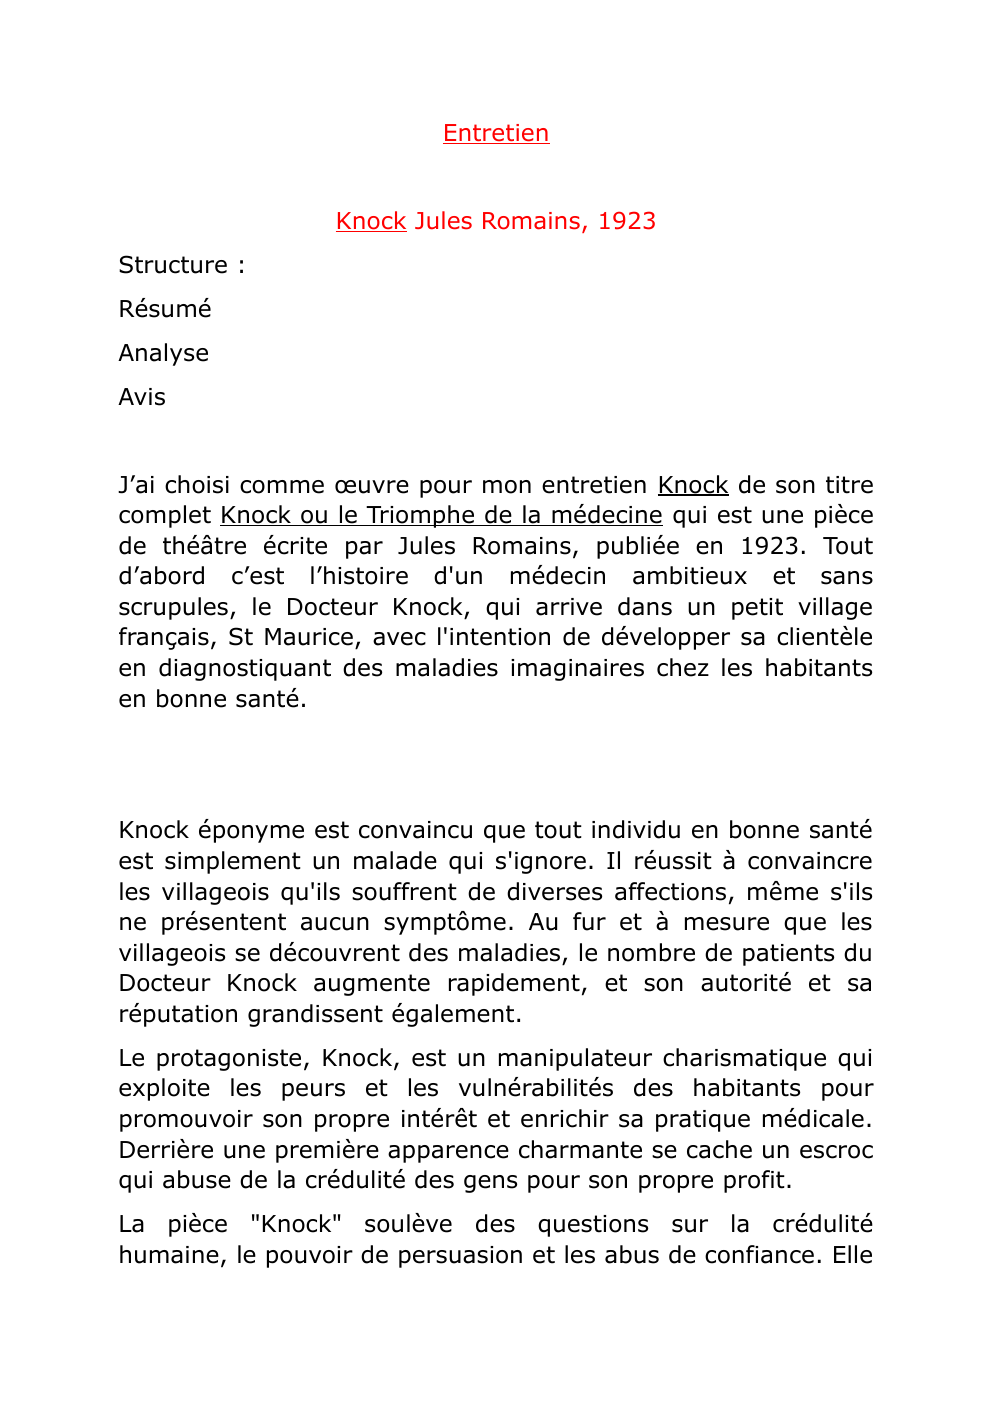 Prévisualisation du document entretien oral de Français sur "knock" de jules romain